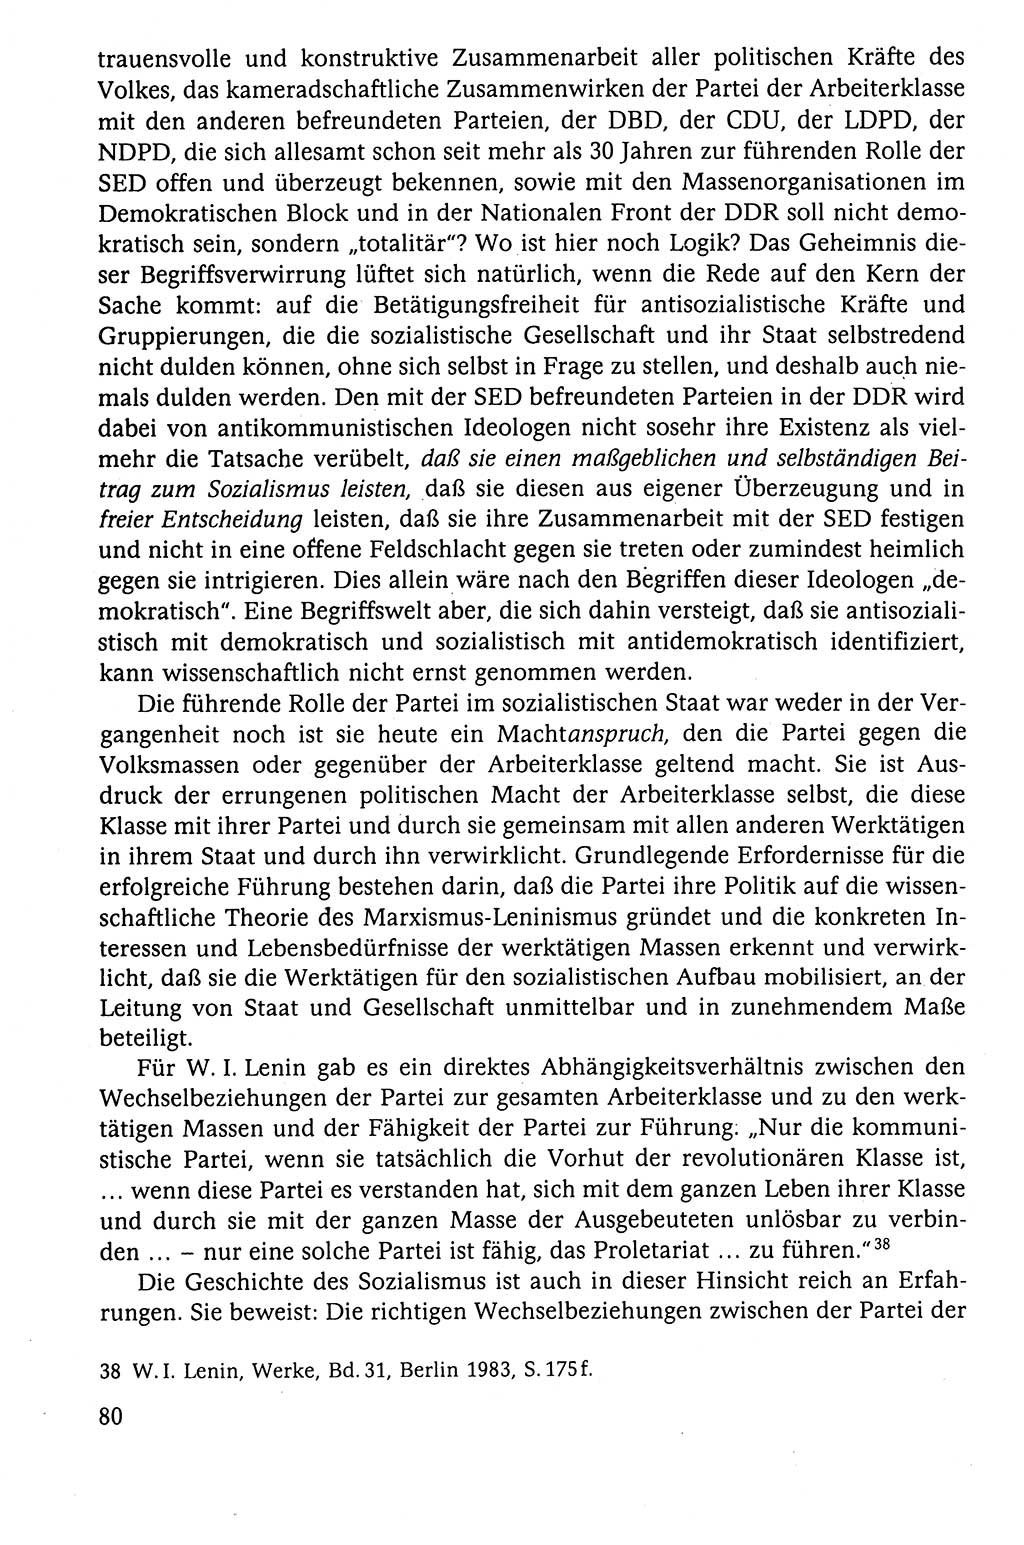 Der Staat im politischen System der DDR (Deutsche Demokratische Republik) 1986, Seite 80 (St. pol. Sys. DDR 1986, S. 80)